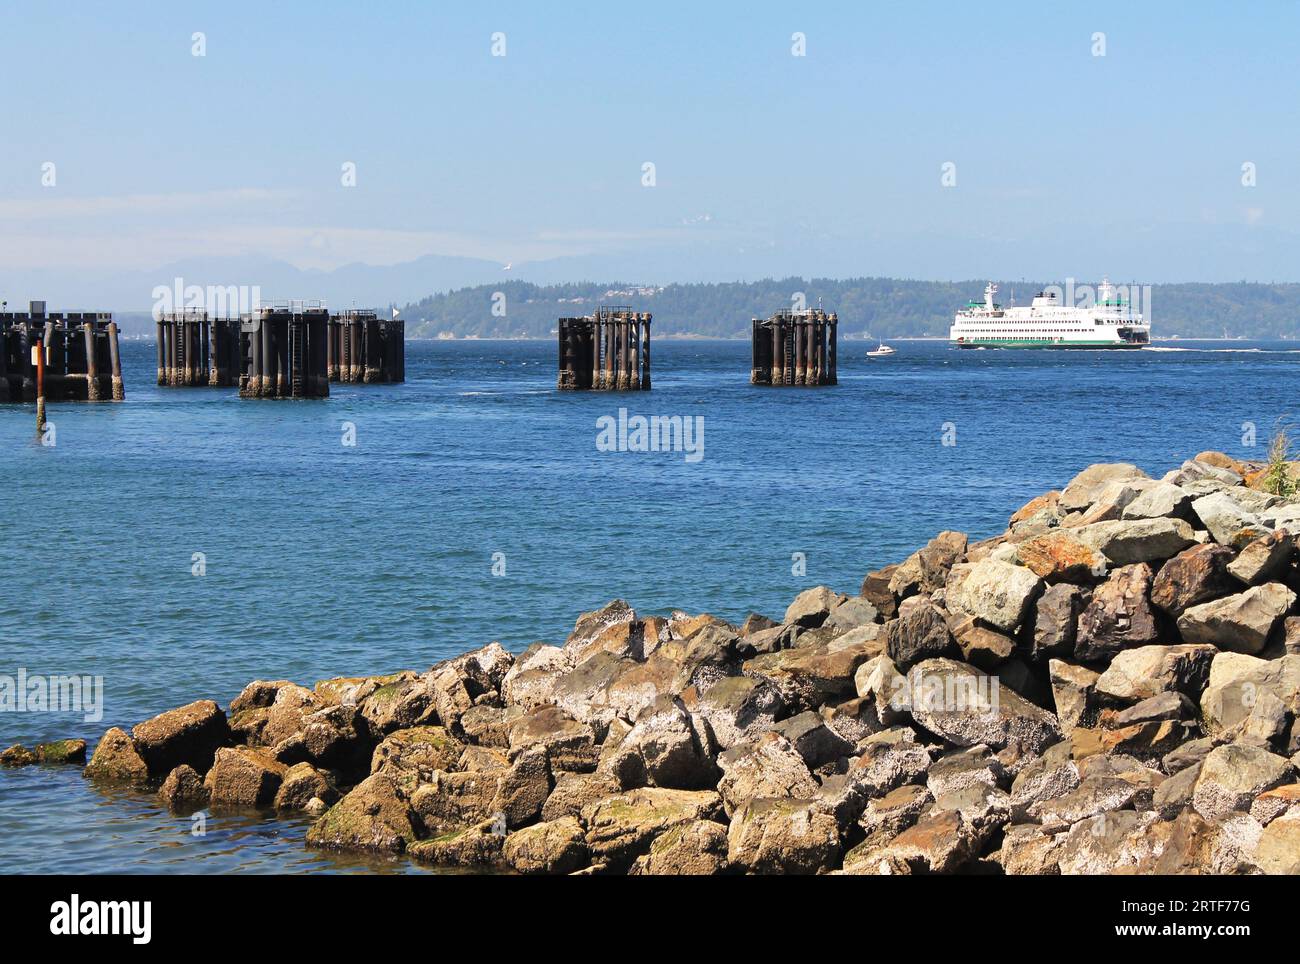 Avec une jetée rocheuse au premier plan, un emblématique ferry blanc de l'État de Washington s'éloigne de la jetée d'Edmonds, Washington, sur son chemin à travers Puget Sound Banque D'Images